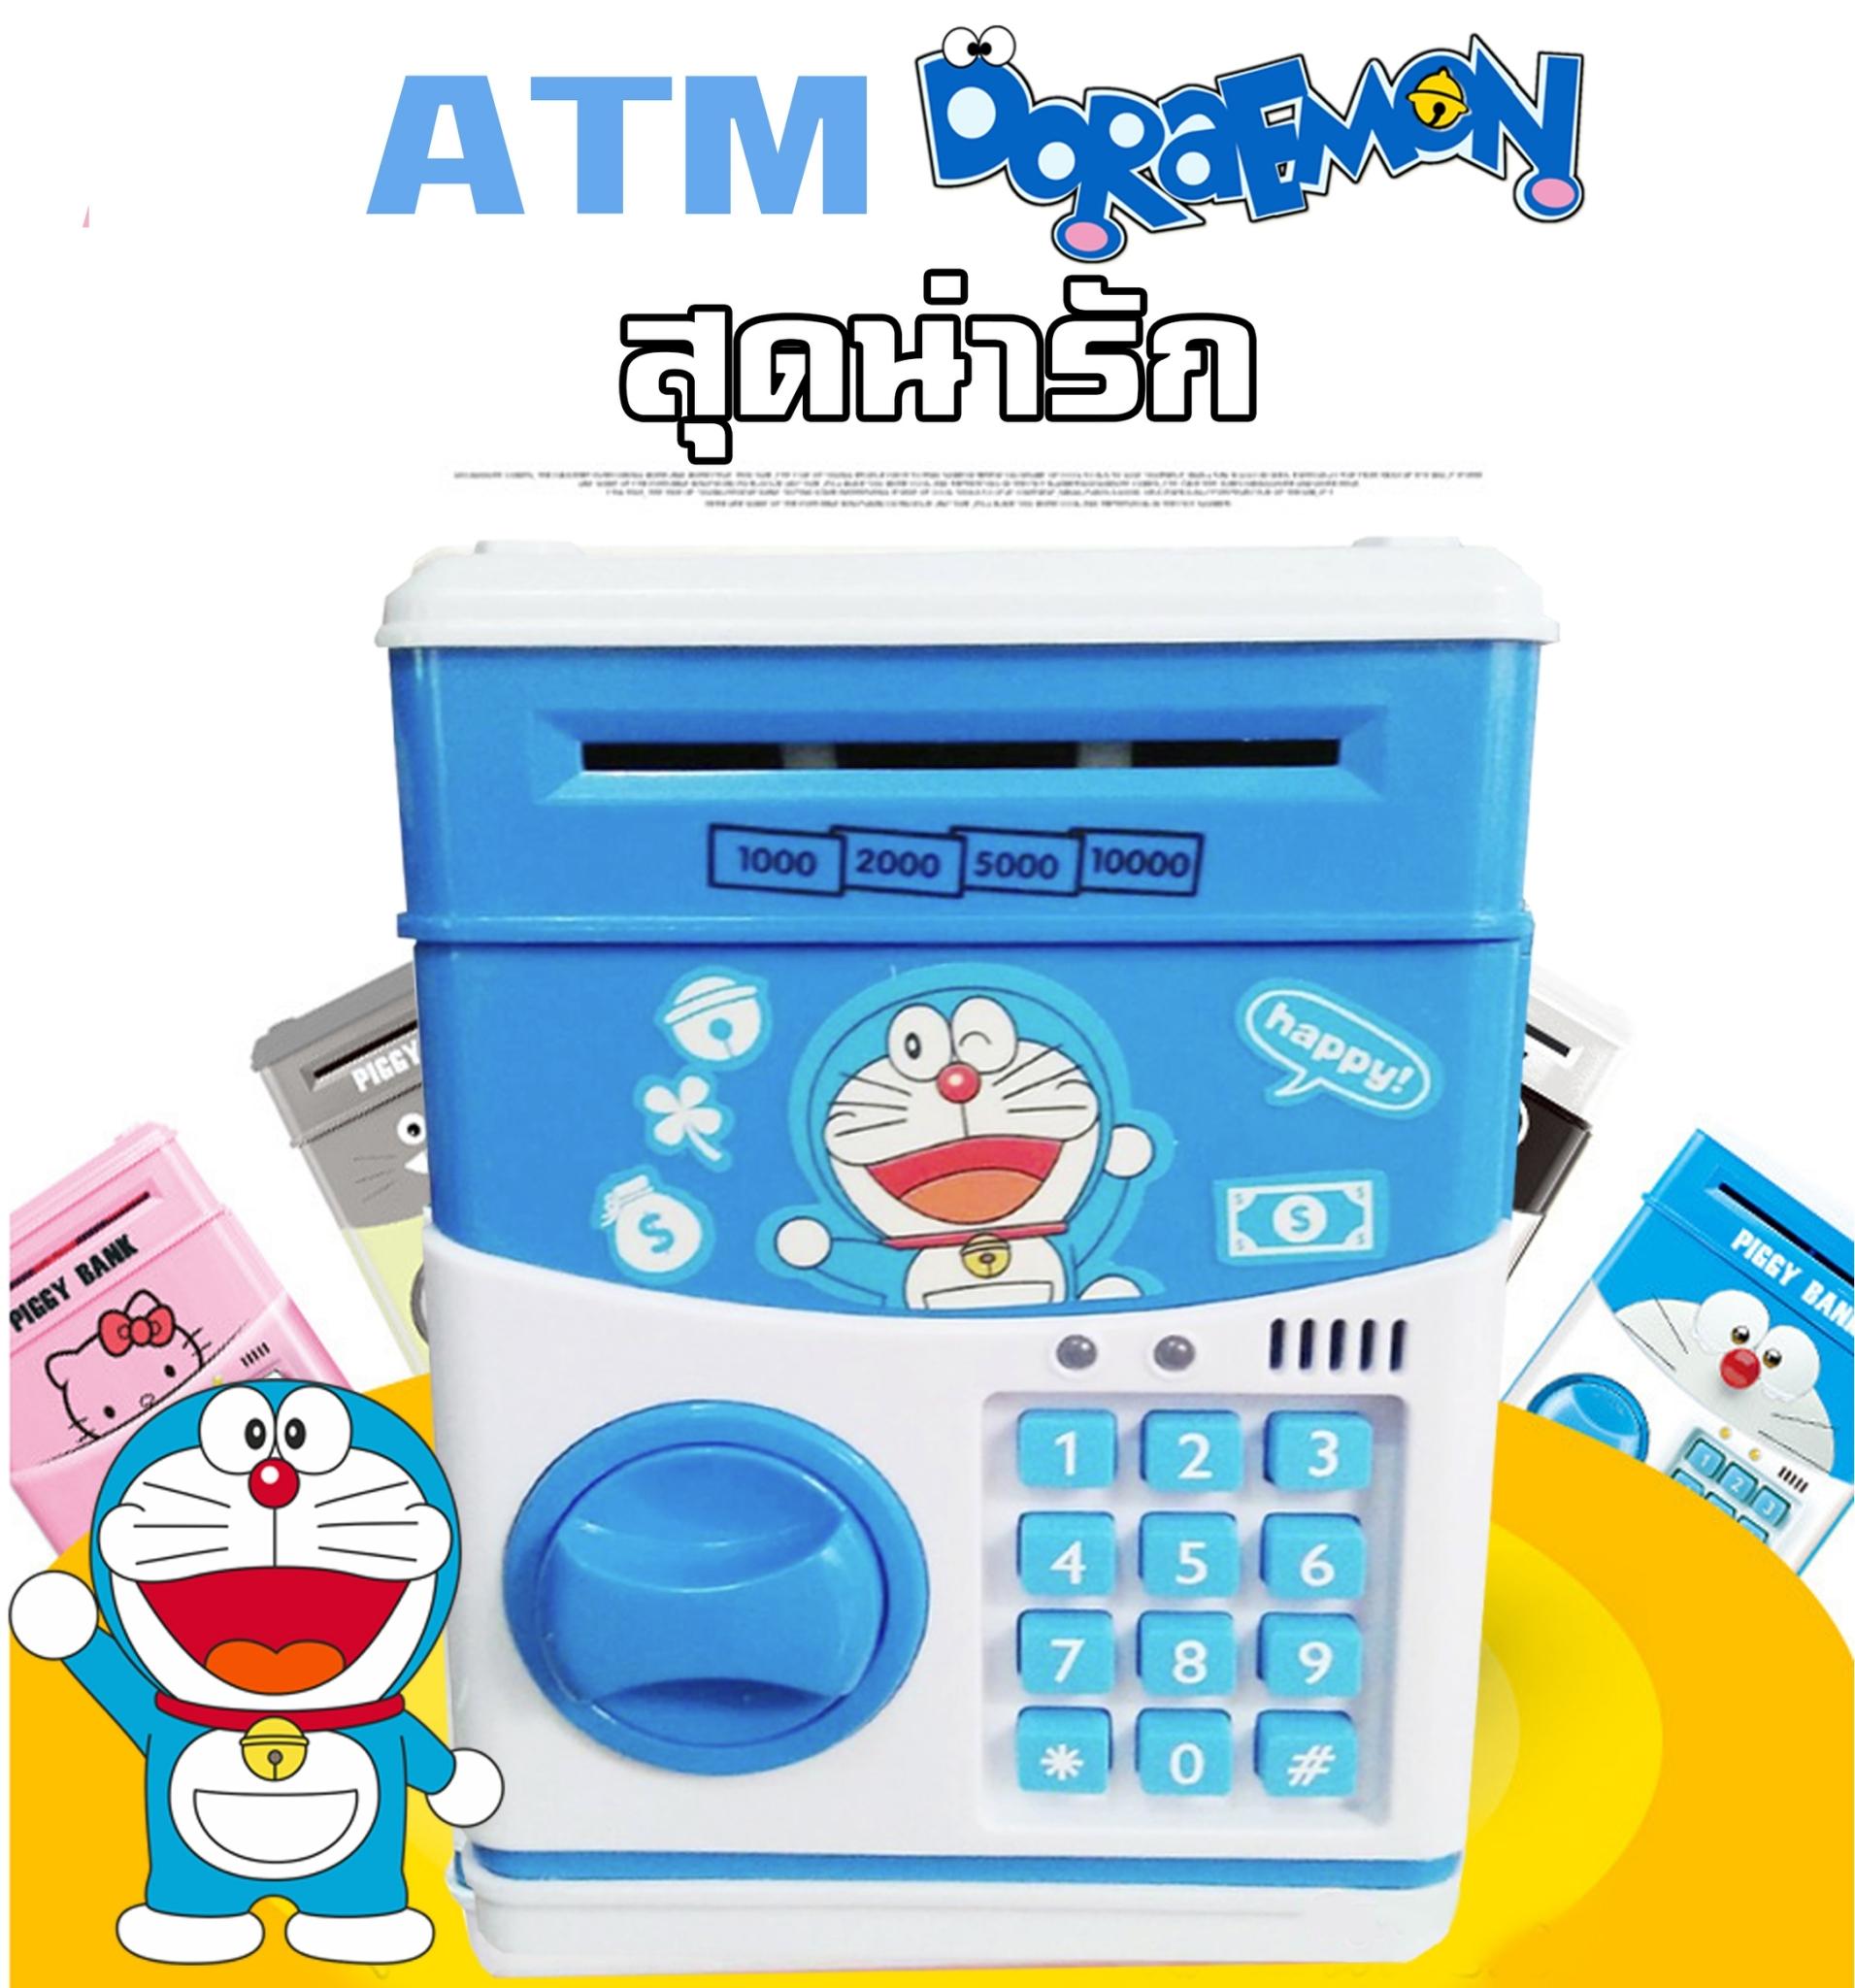 กระปุกออมสินตู้เซฟ Kitty, Doraemon สุดน่ารัก (ATM)  แถมฟรีถ่าน 1 แพ็ค